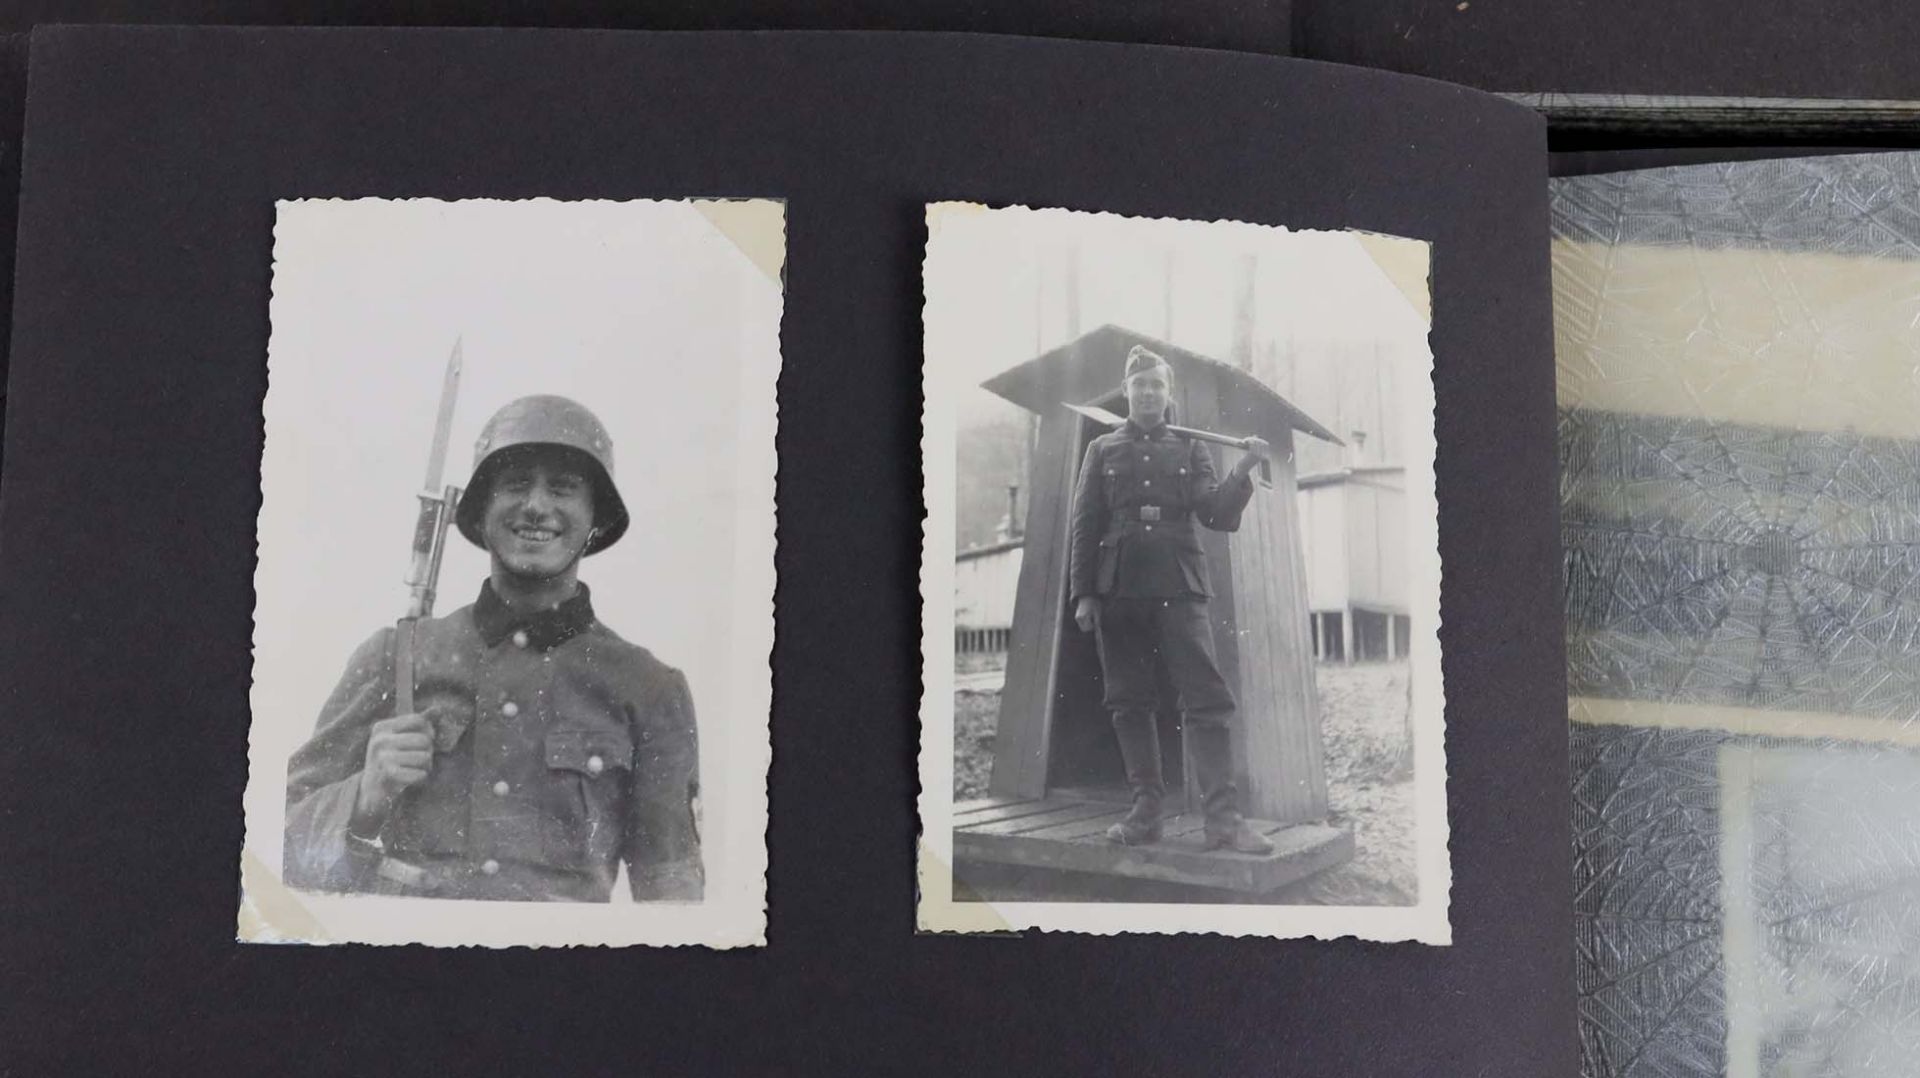 2 Militär Photoalben u.a.reich mit SW Photos bestückte Alben, Portrait- sowie Gruppe - Image 2 of 4